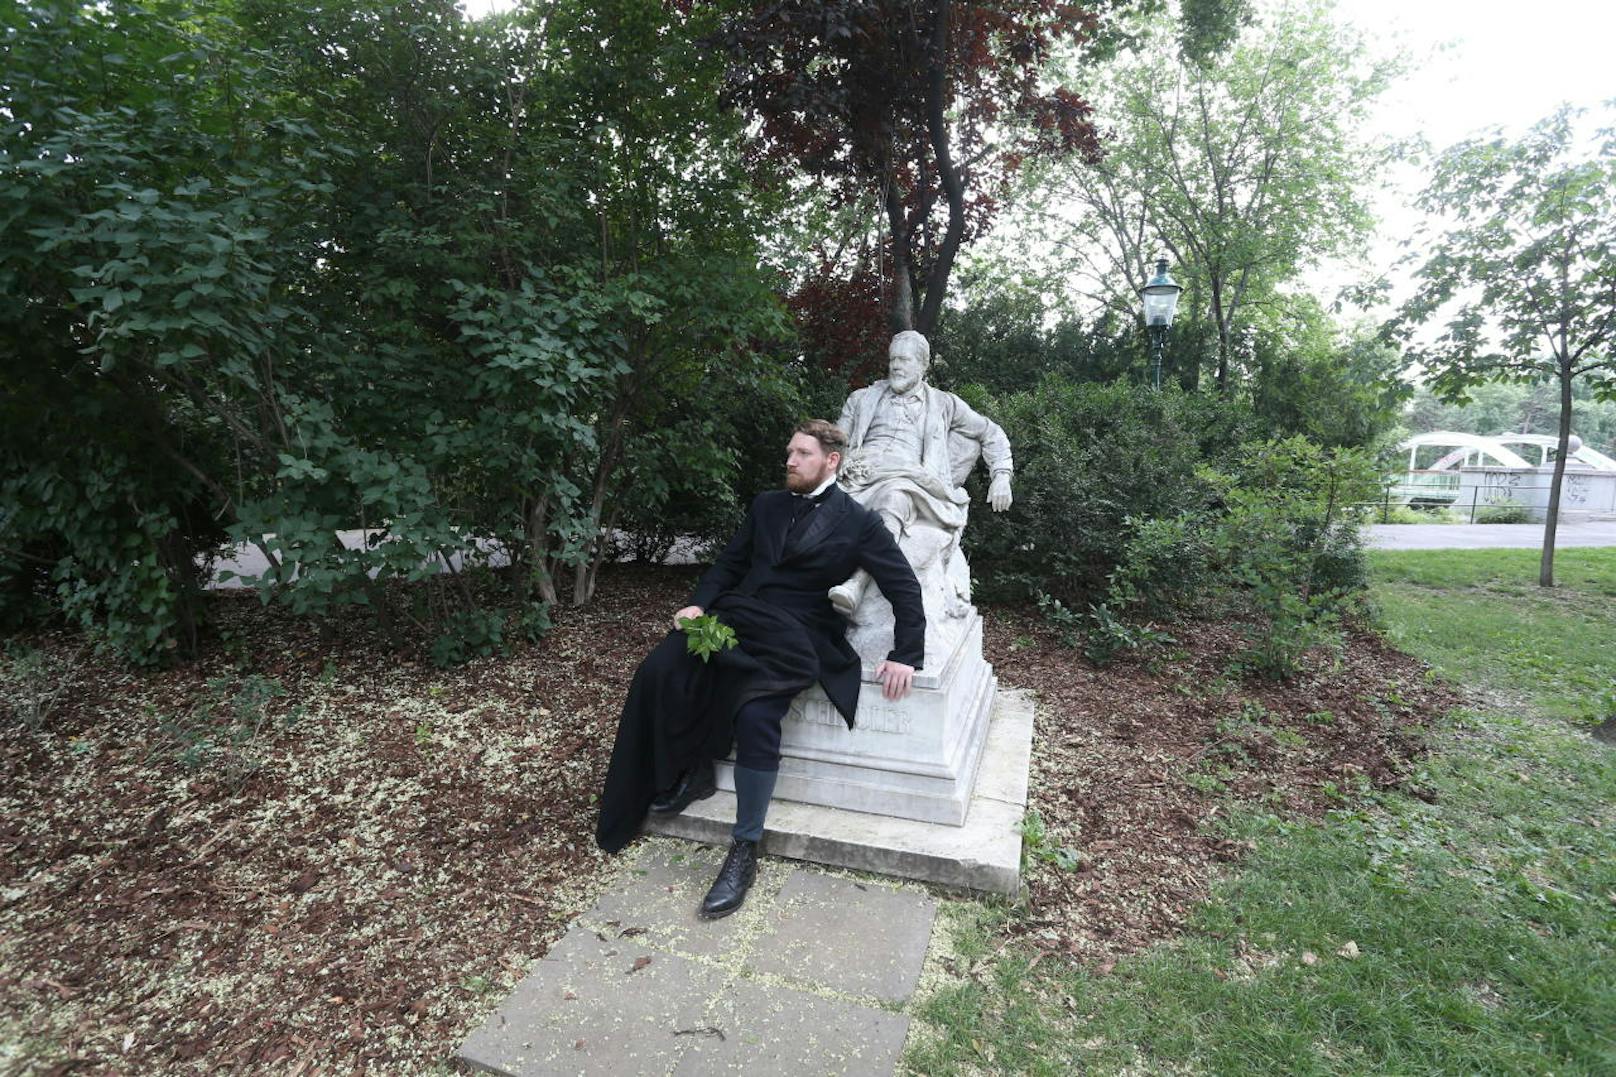 Die Statue des österreichischen Landschaftsmalers Emil Jakob Schindler ist nur eine von vielen Denkmälern im Wiener Stadtpark. Ein als Schindler verkleideter Stadt-Guide nimmt nicht dessen Pose sondern auch dessen Sichtweise an.